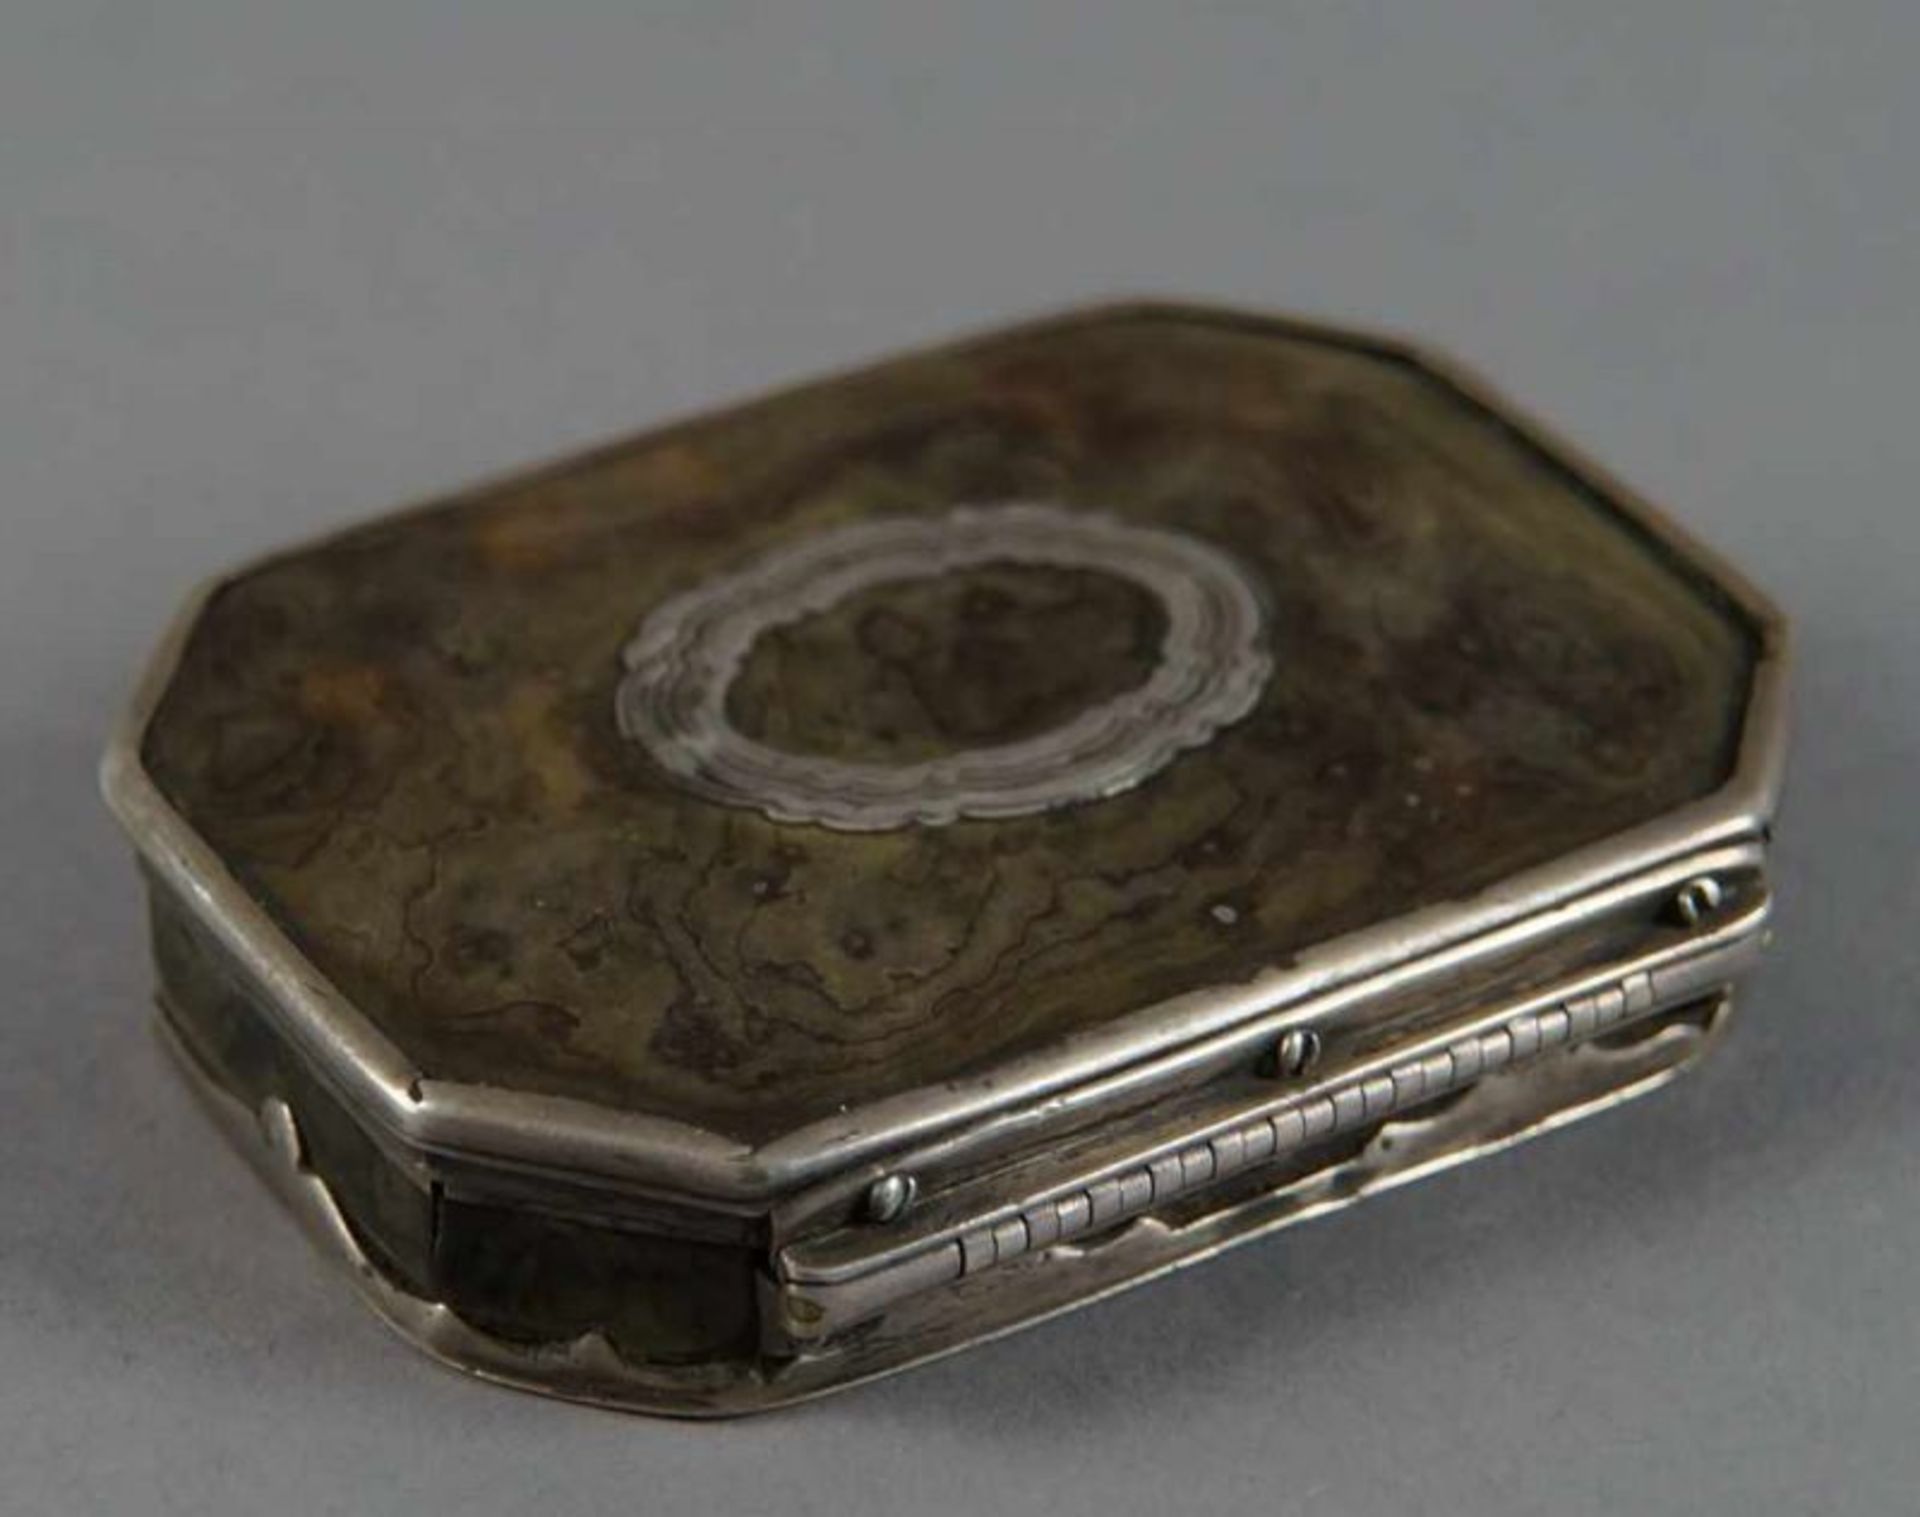 Barock Deckeldose, Schildpatt mit Silbermontierung, 18. JH, besch., 2x8,5x6 cm 20.17 % buyer's - Bild 5 aus 11